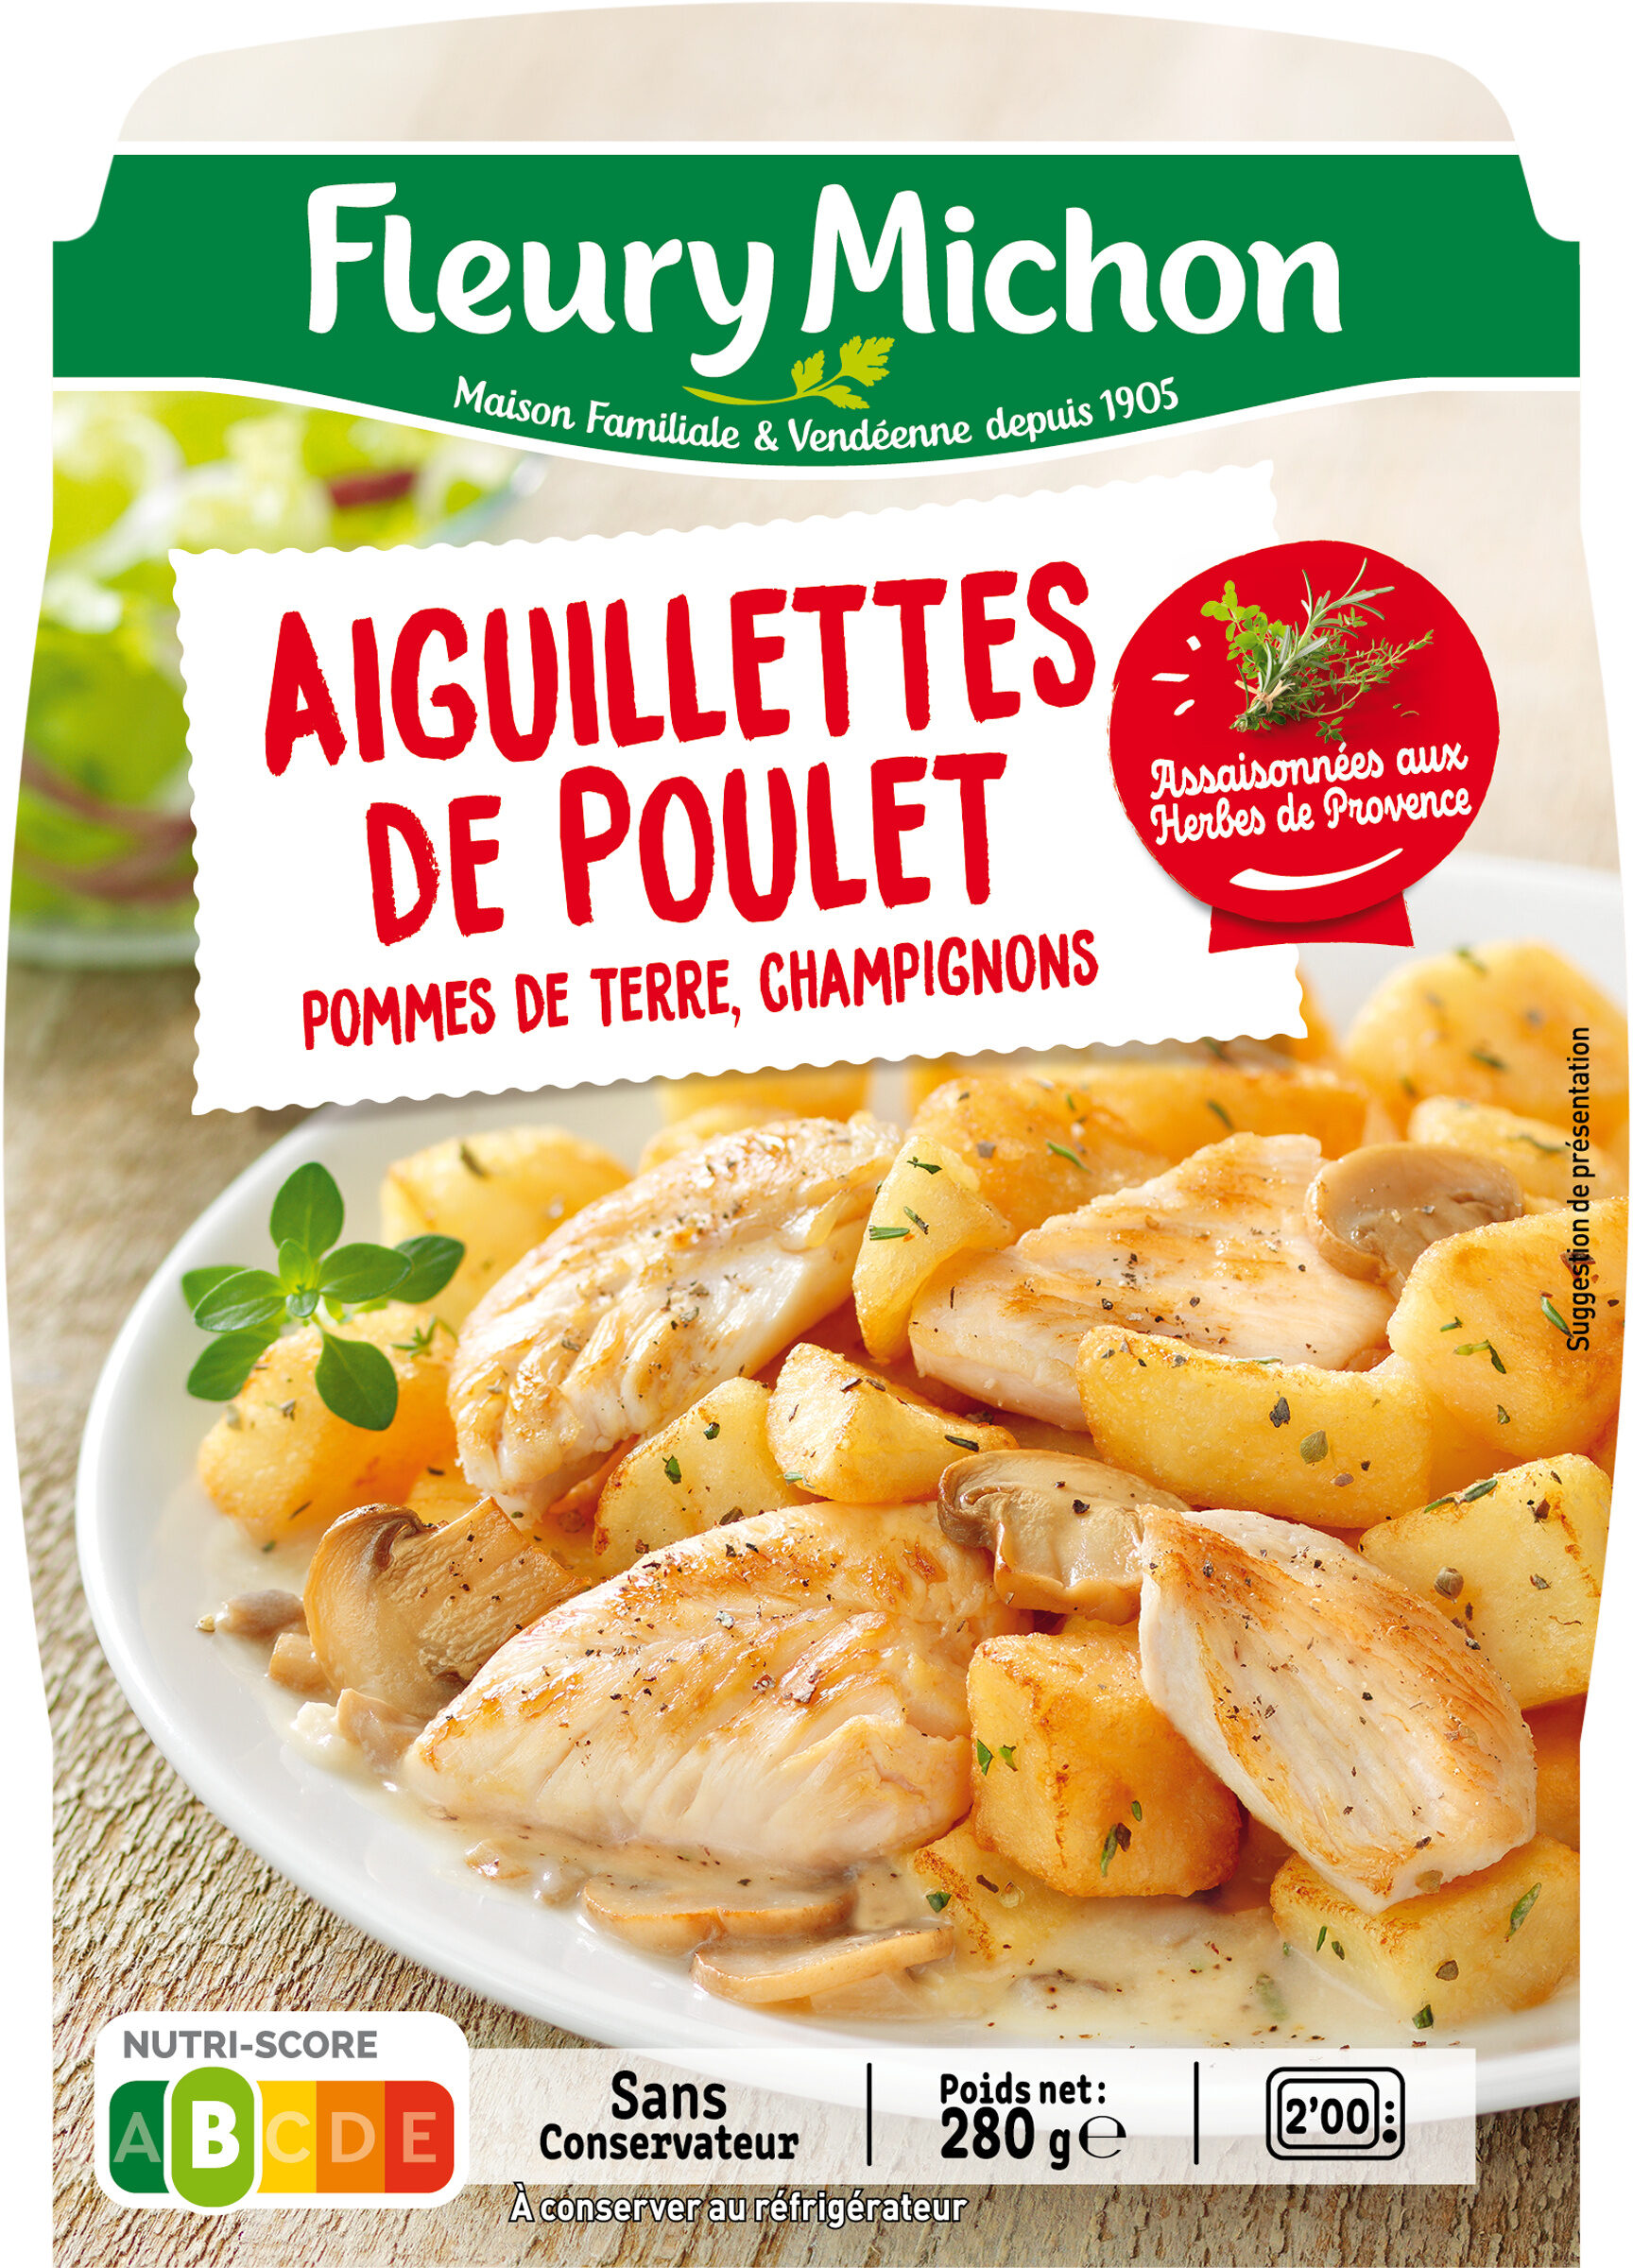 Les aiguillettes de poulet et ses pommes de terre champignons - Producto - fr